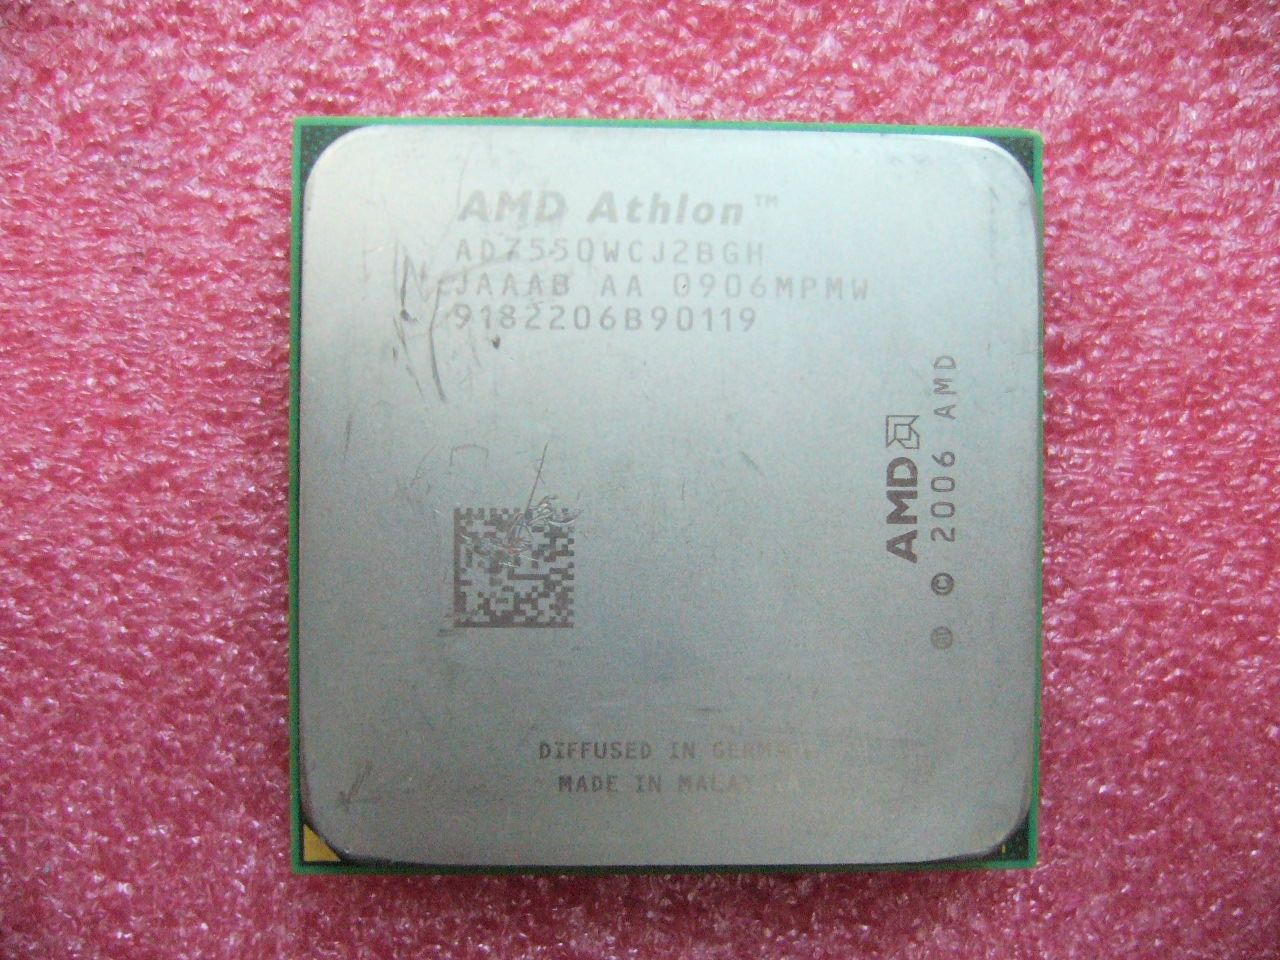 QTY 1x AMD Athlon X2 7550 2.5 GHz Dual-Core (AD7550WCJ2BGH) CPU Socket AM2+